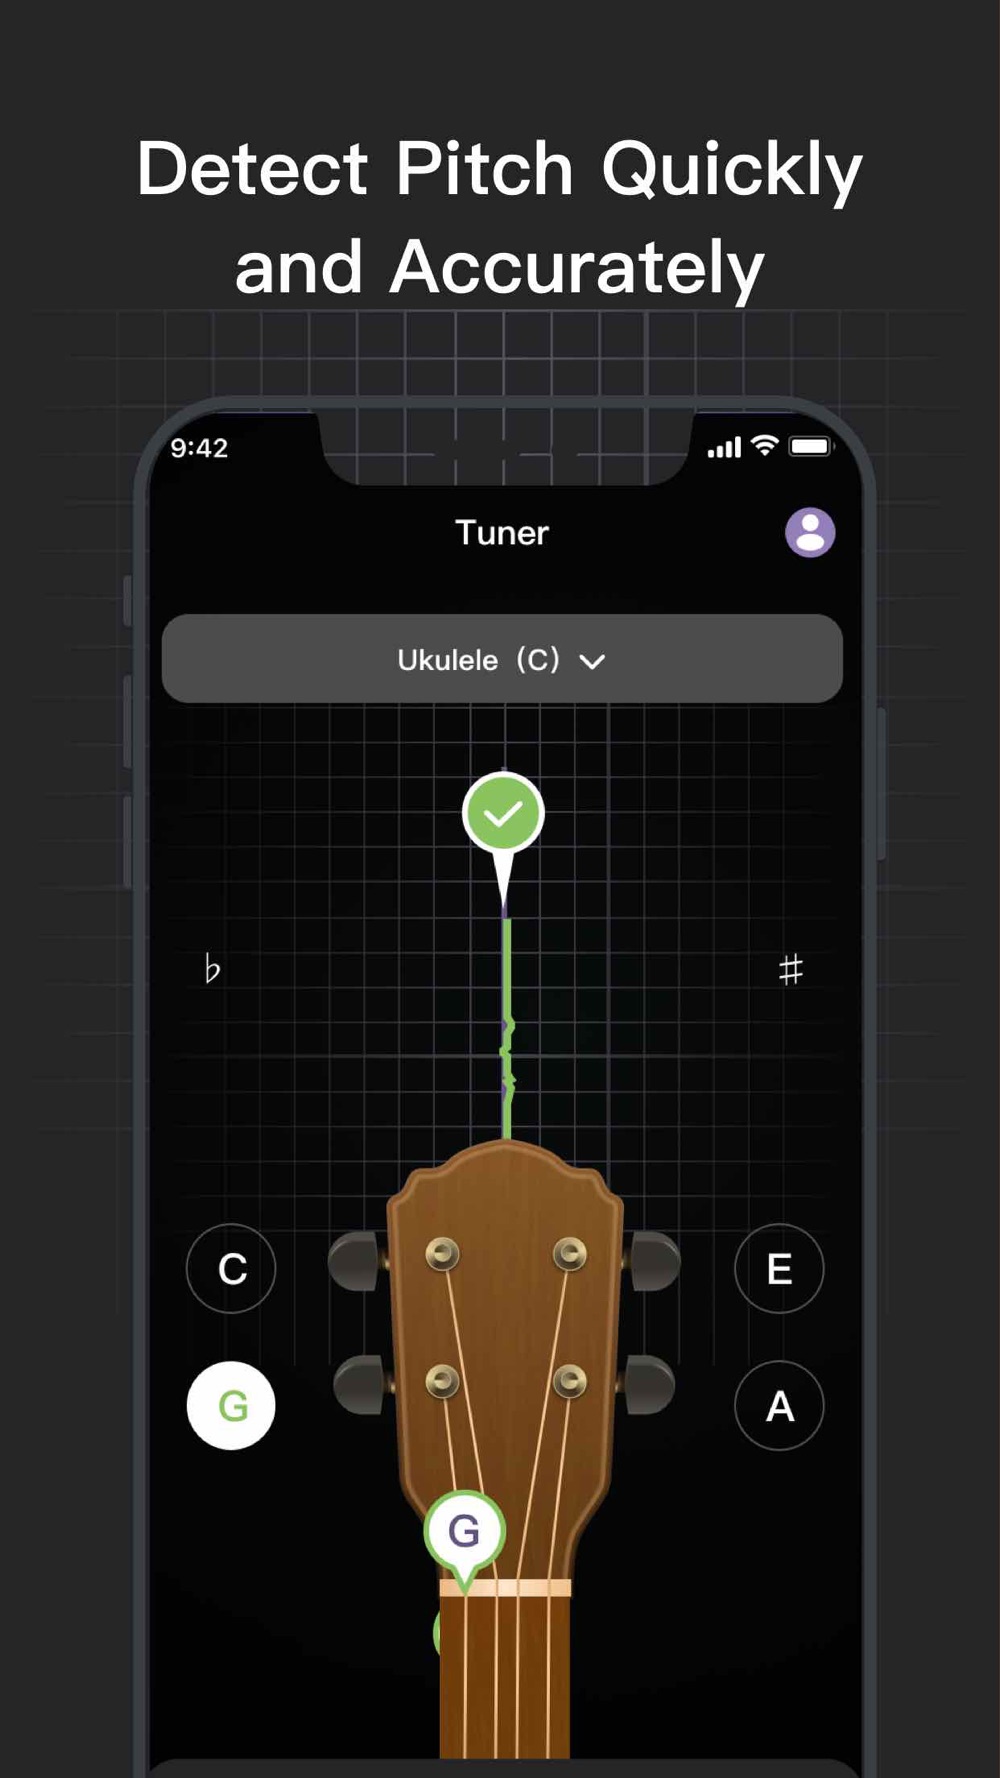 Guitar Tuner pro,Ukulele Tuner Free Download App for iPhone - STEPrimo.com